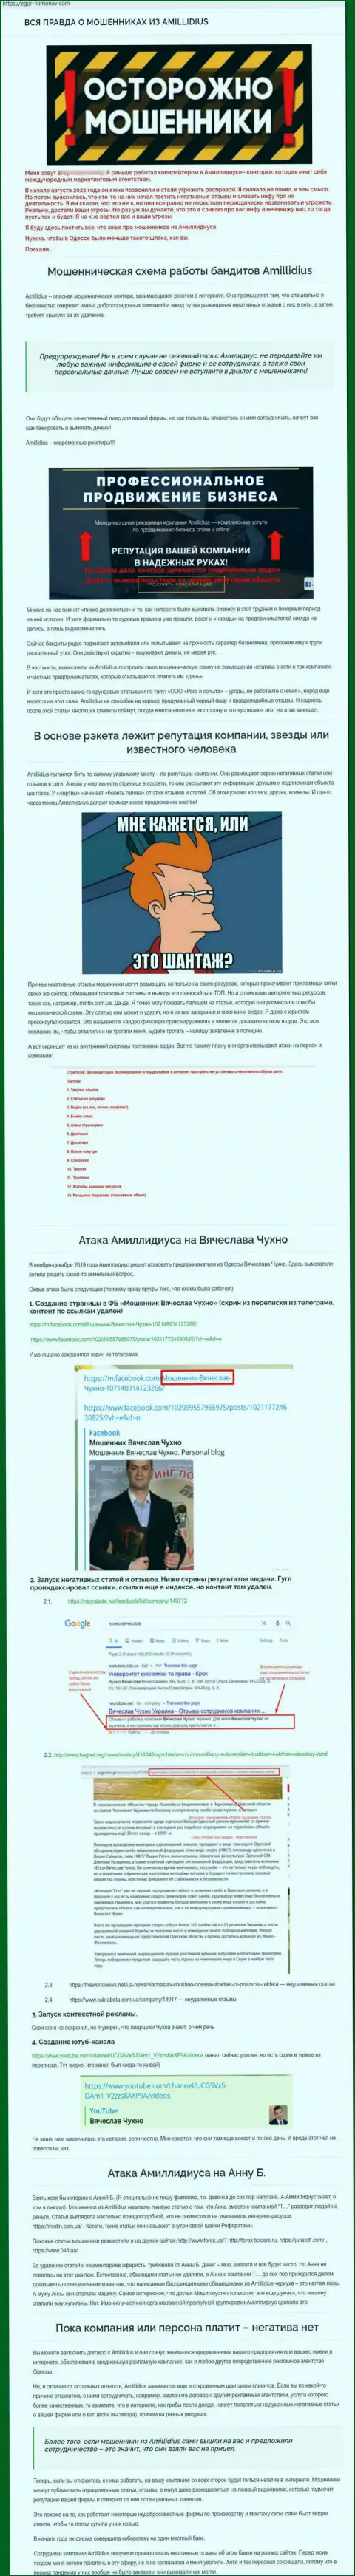 Достоверный отзыв о работе пиар-конторы Амиллидиус, во главе которой Богдан Михайлович Терзи